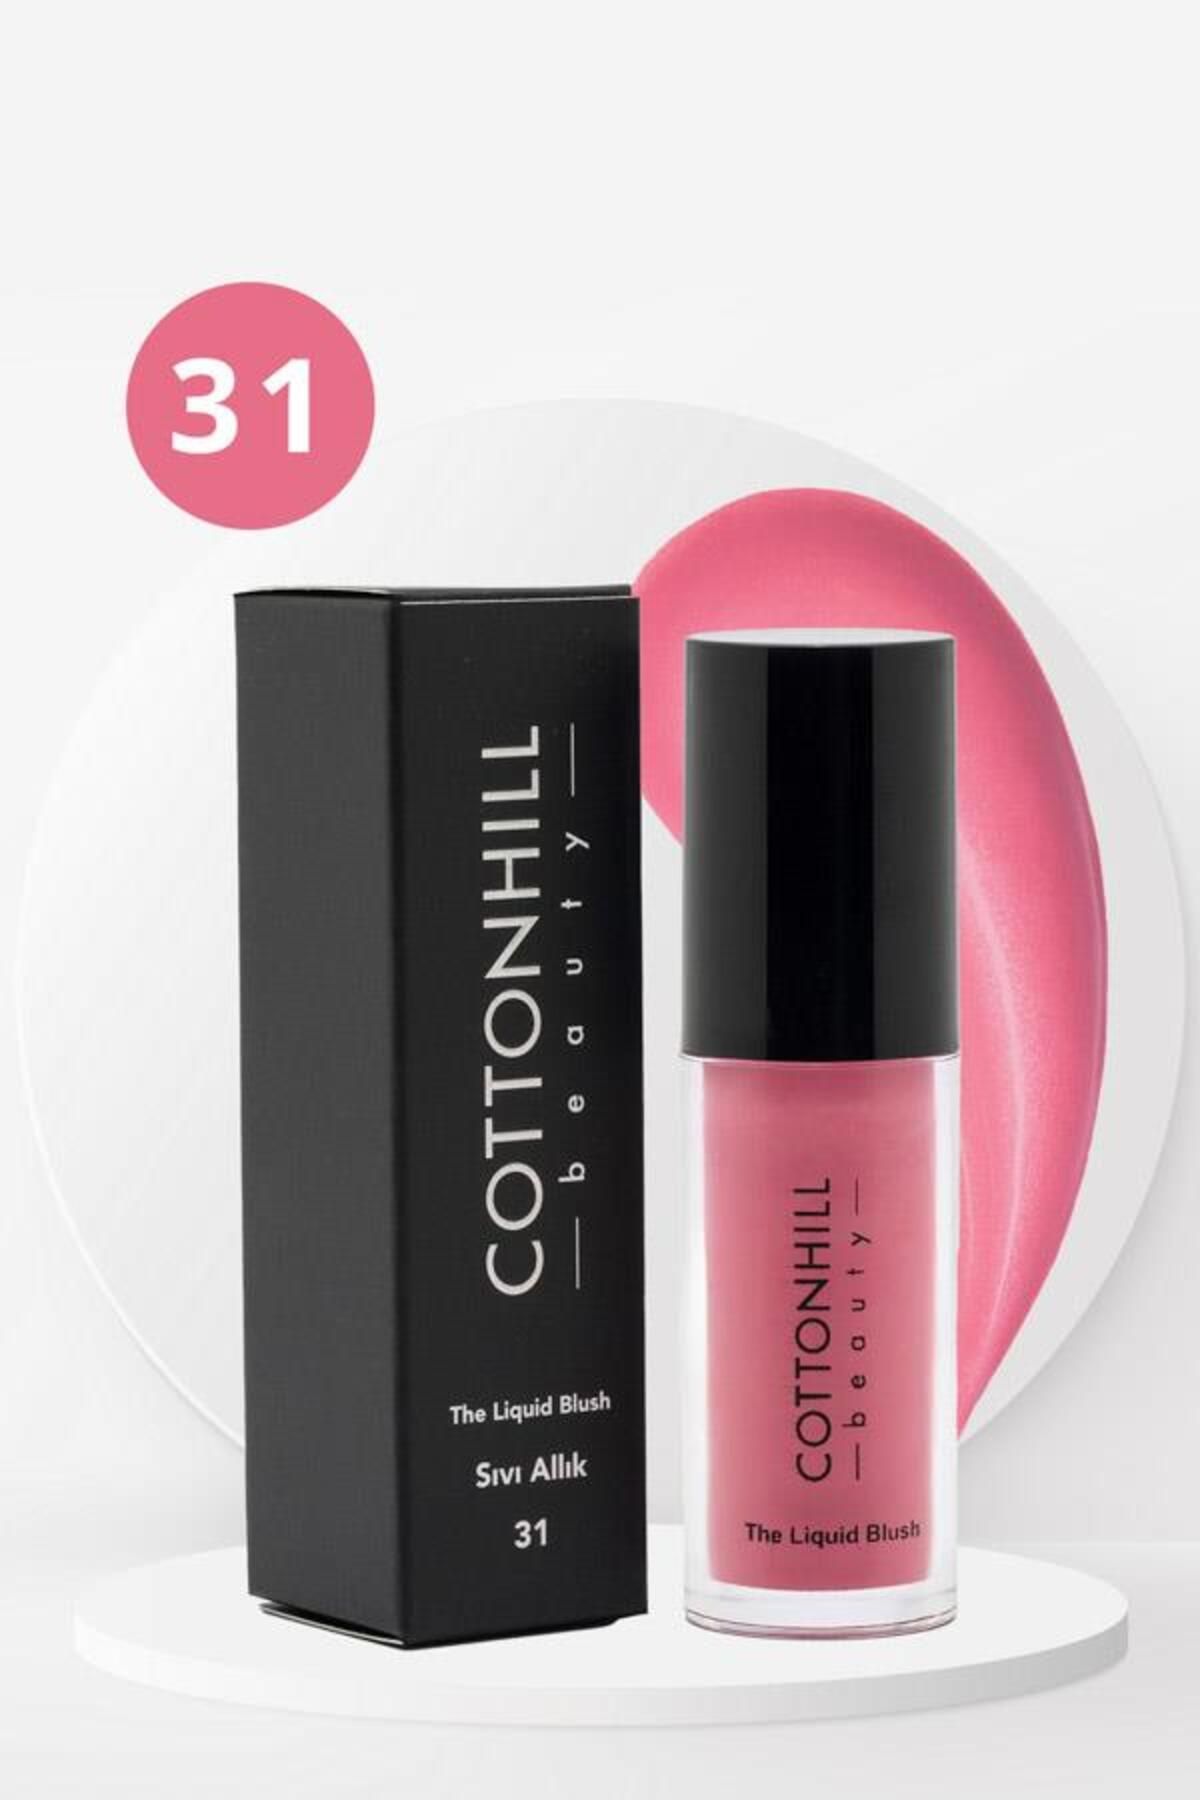 Cottonhill Beauty The Liquid Blush - Sıvı Allık 31 - 5 ml CHBTY1004